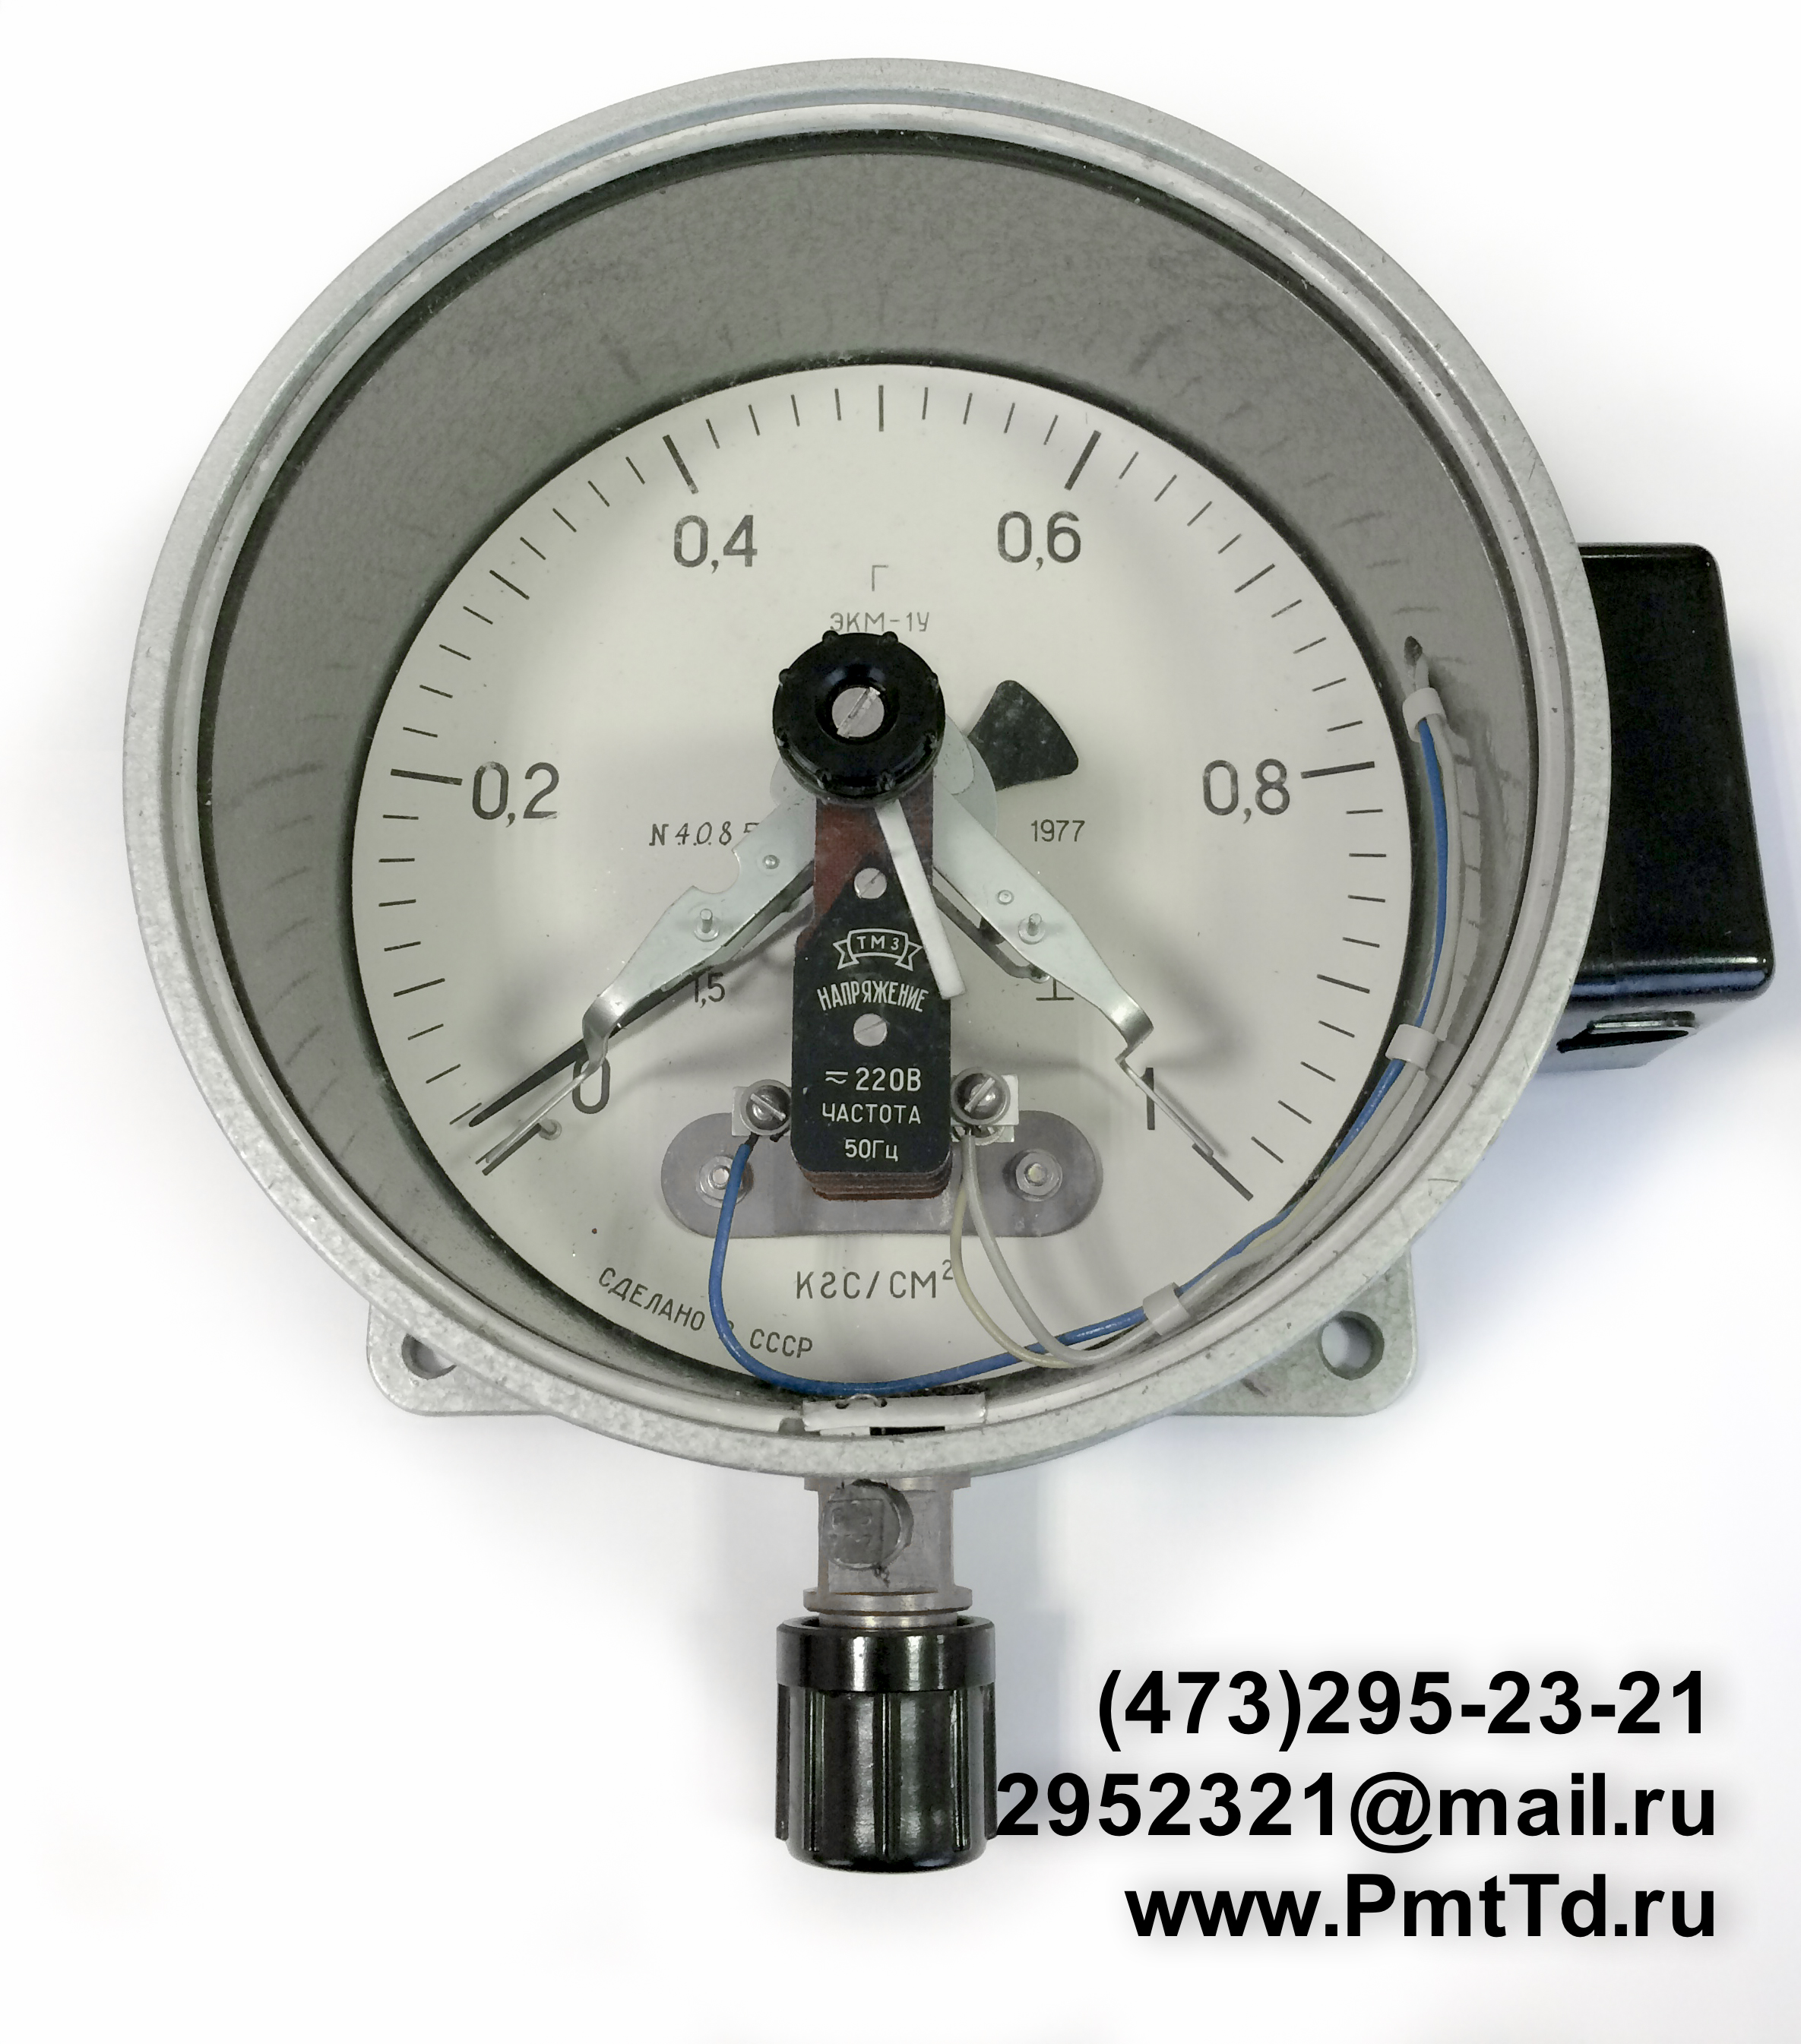 Электроконтактный манометр ЭКМ-1У 0-250 кгс/см2